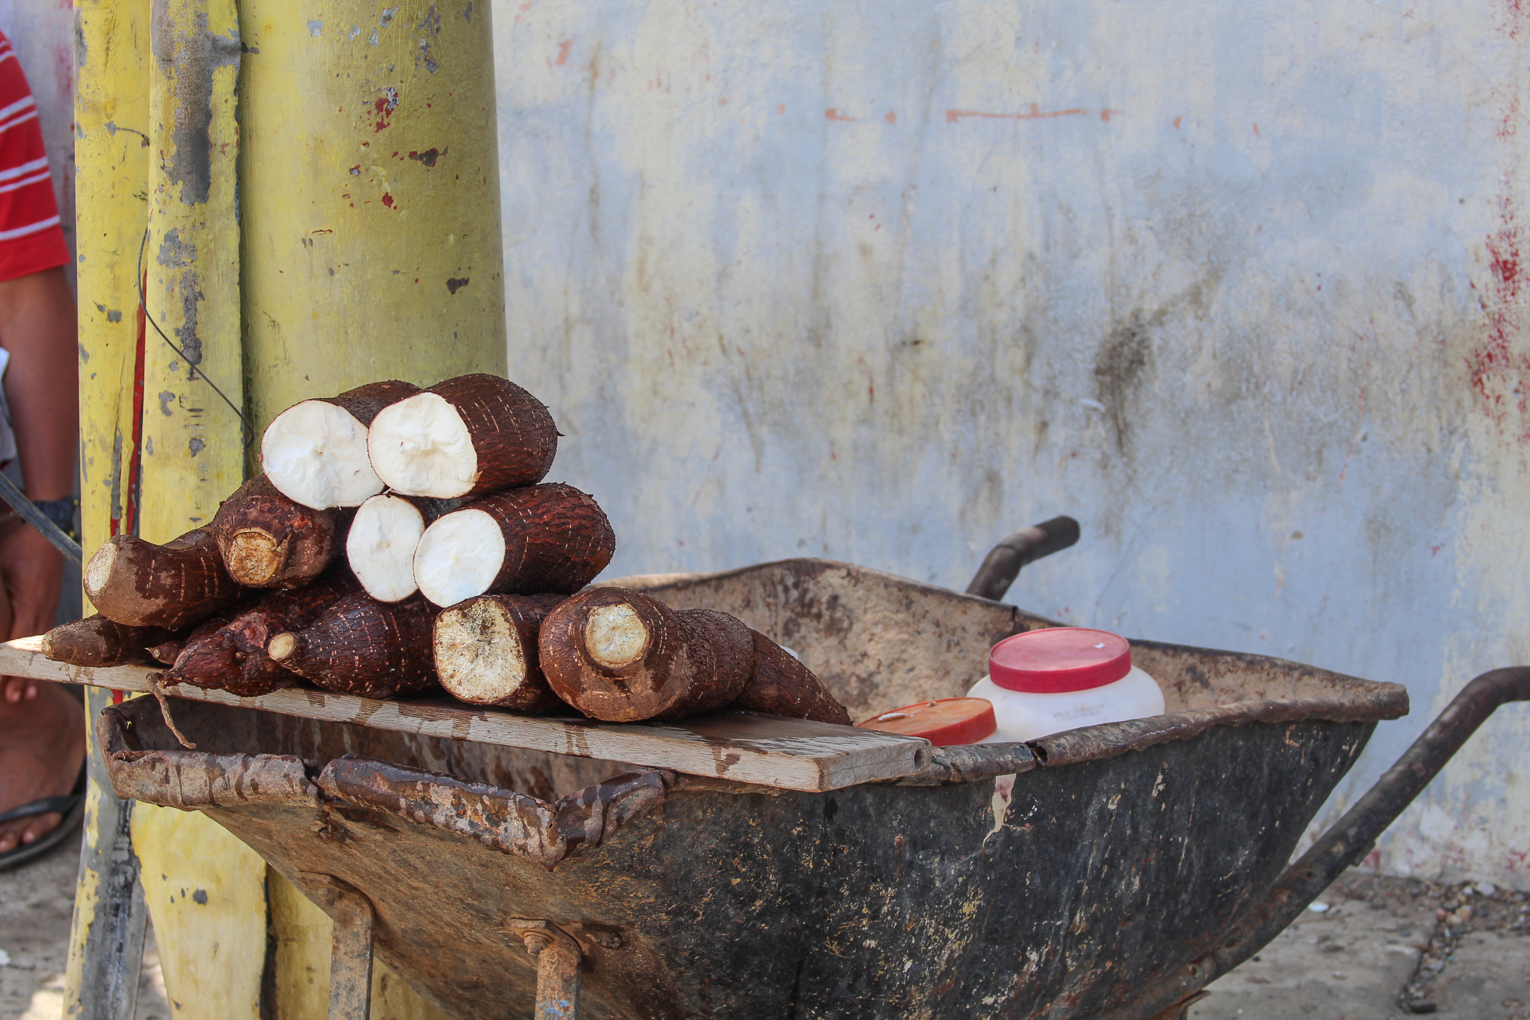 El kilogramo de yuca casi duplica su precio en solo 15 días en Maracaibo, San Francisco y Mara